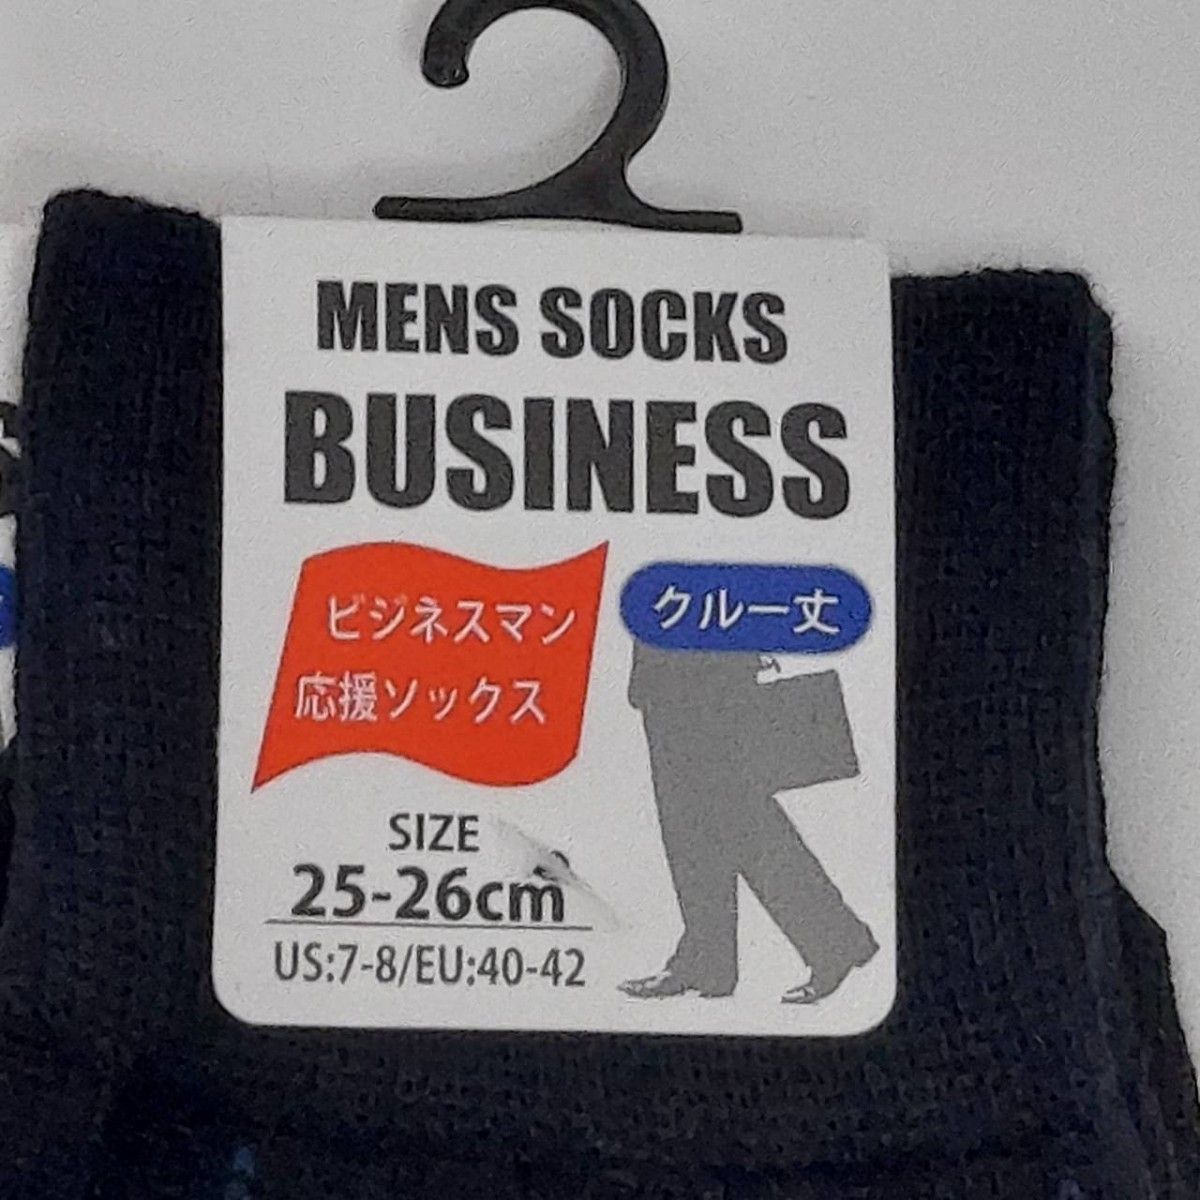 ビジネスソックス 5足セット 紳士 靴下 クルー丈 綿混 薄手 メンズソックス メンズソックス メンズ靴下